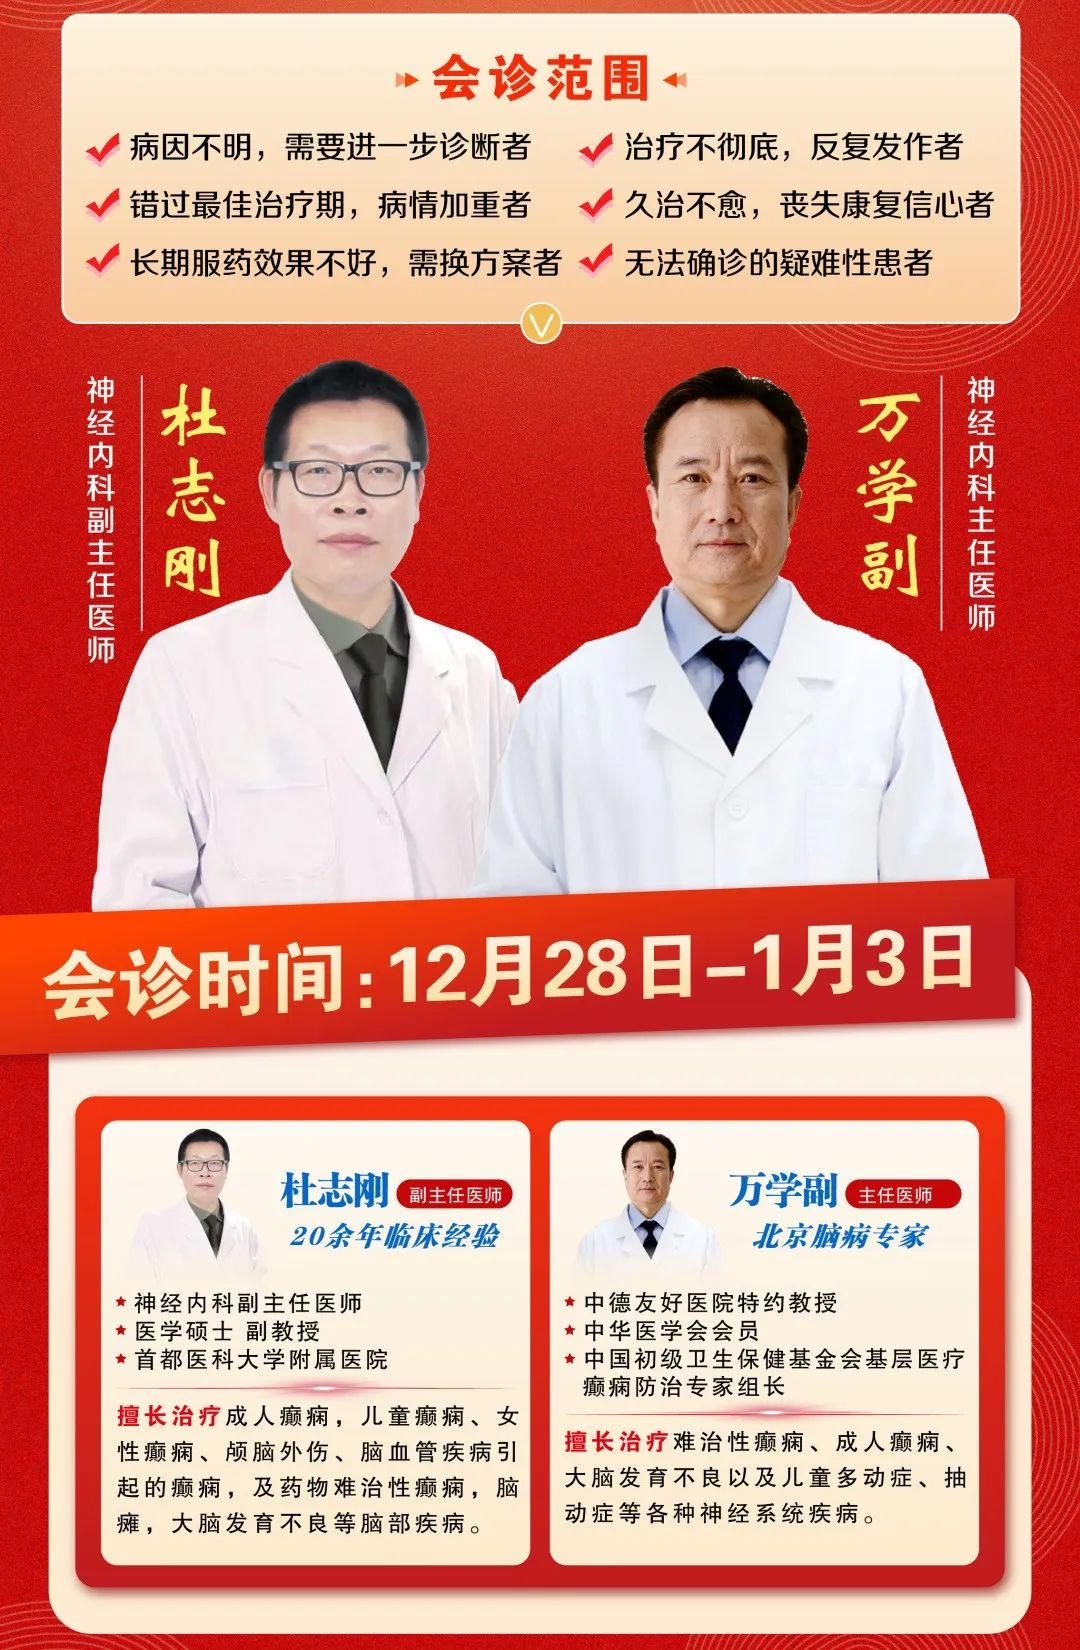 【会诊通知】12月28日—1月3日，两位北京专家坐诊郑州，点击报名预约！